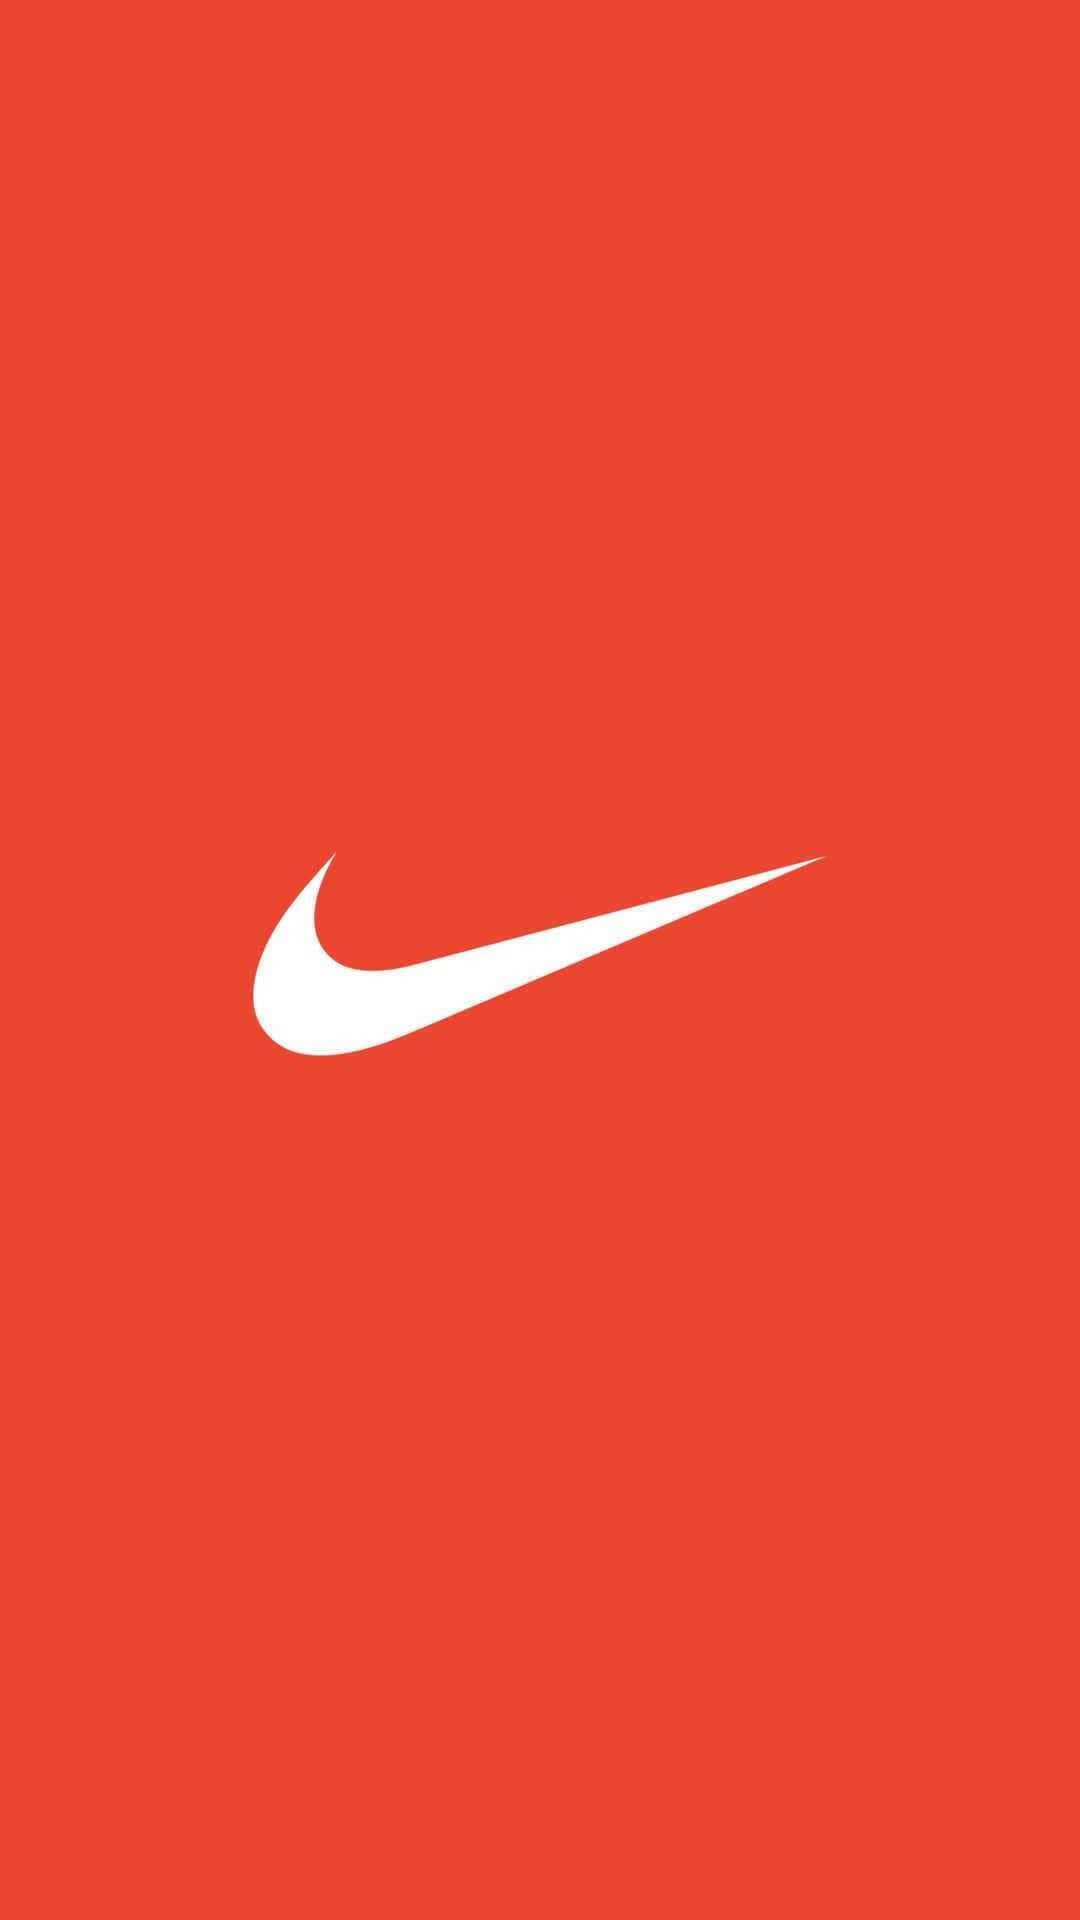 Logotipode Nike Sobre Un Fondo Naranja Fondo de pantalla